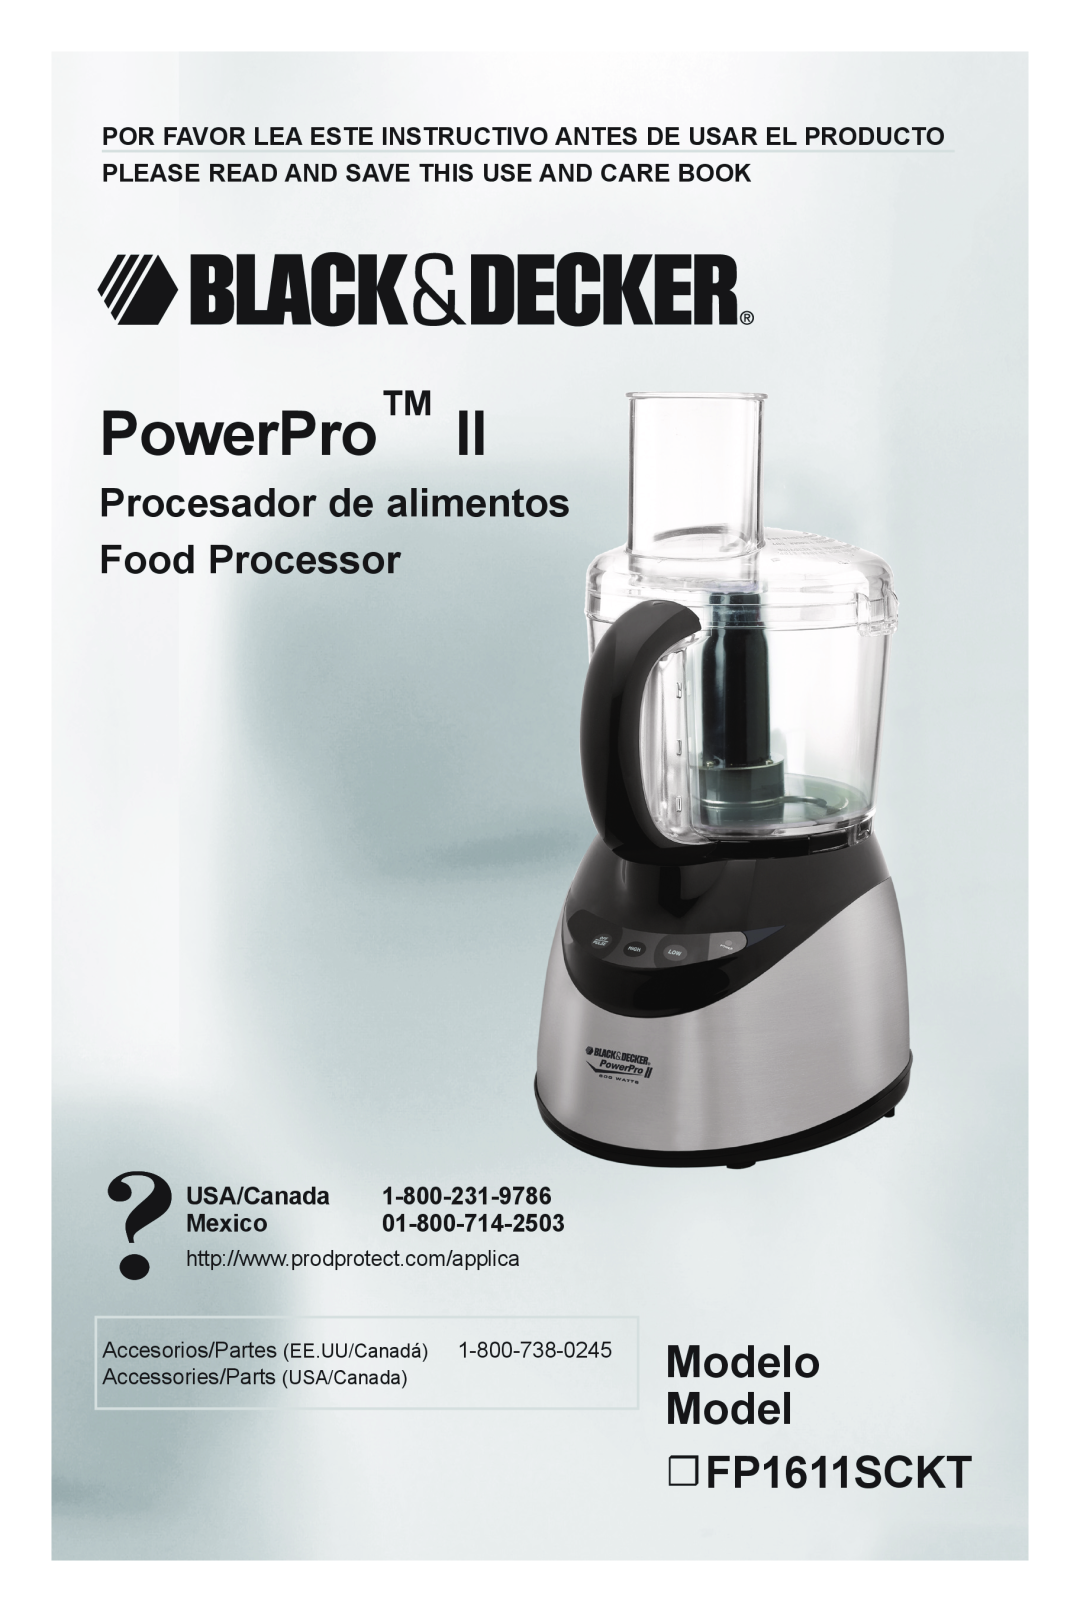 Black & Decker manual Modelo Model FP1611SCKT, PowerPro, Procesador de alimentos Food Processor, USA/Canada Mexico 